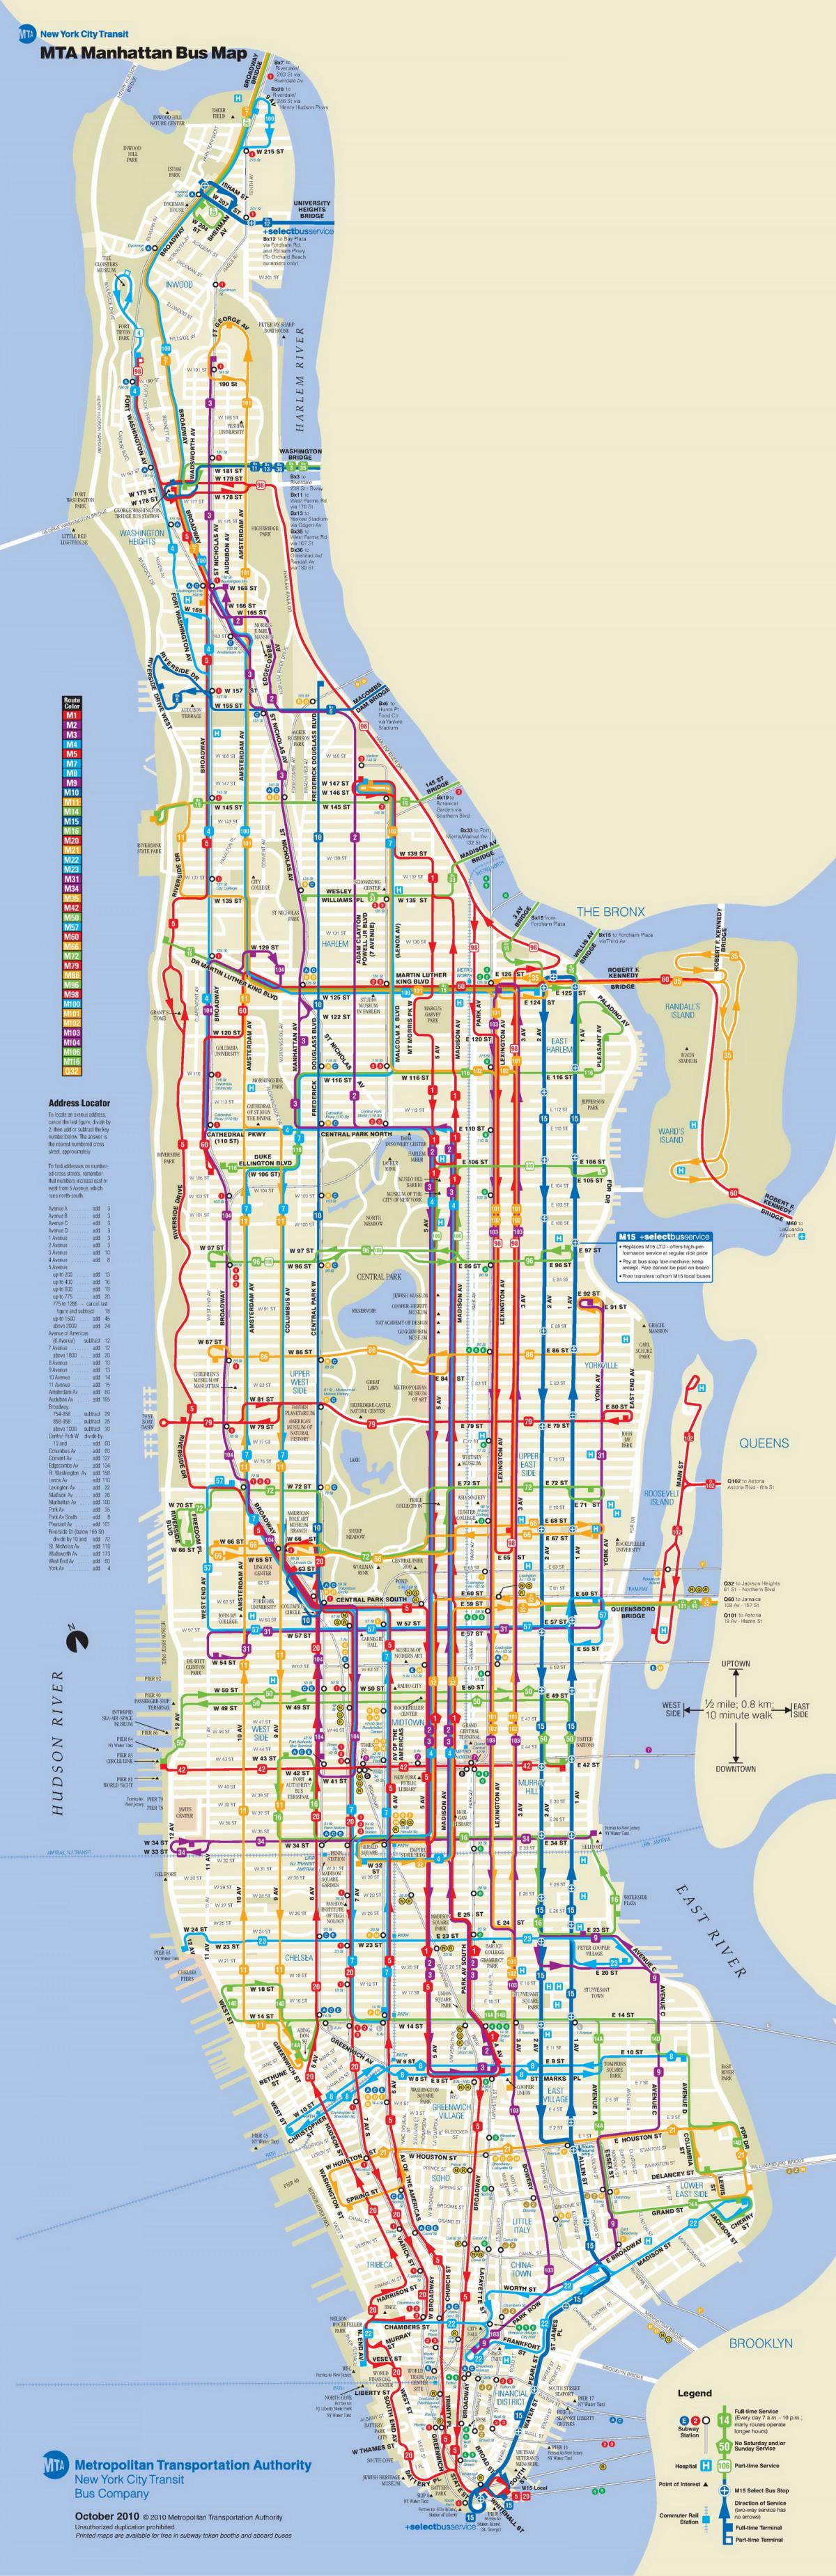 MTA ავტობუსი რუკა, მანჰეტენზე